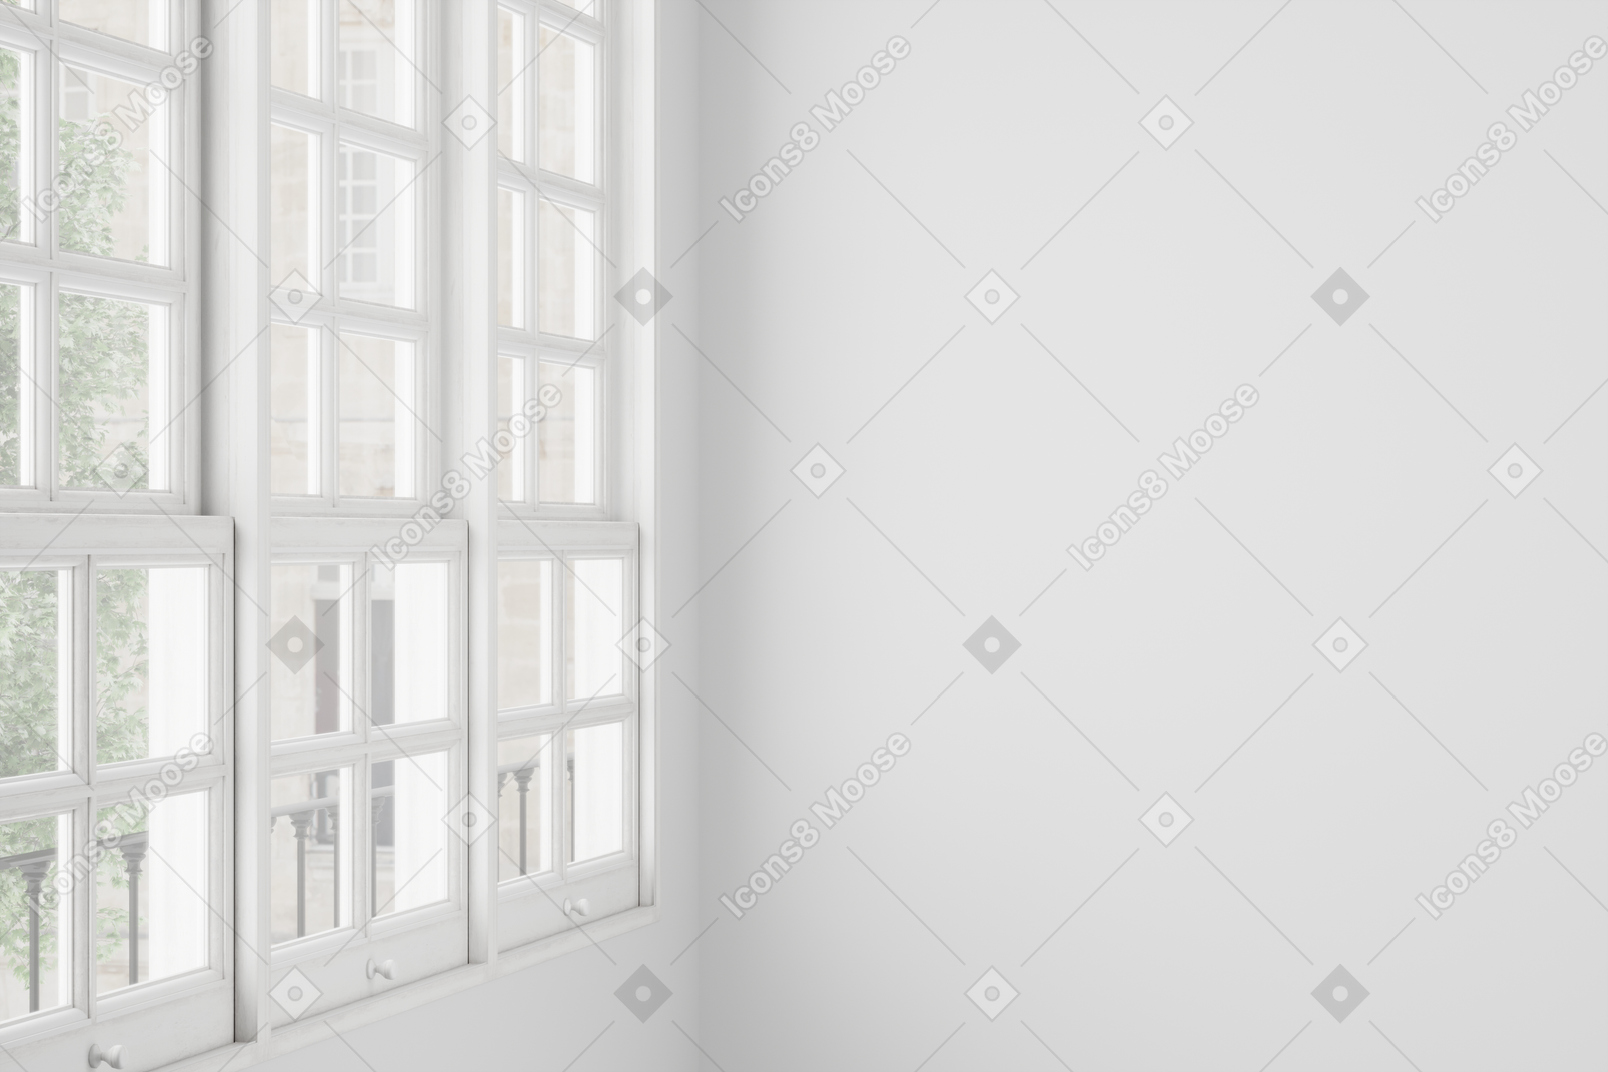 Grande fenêtre avec cadres en bois blanc